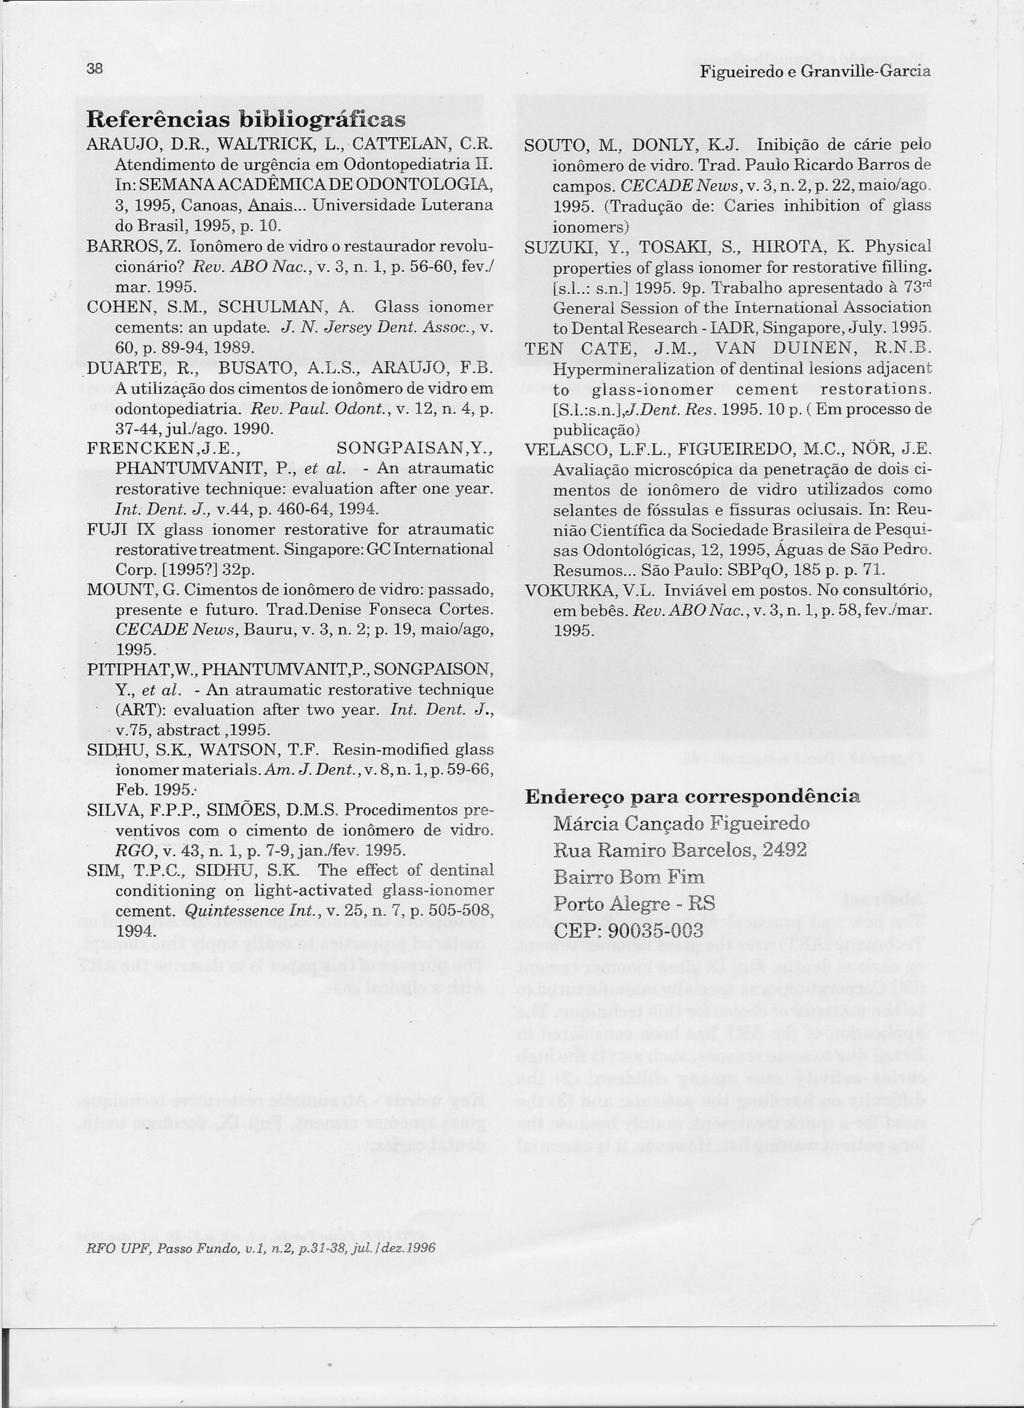 38 Referências bibliográficas ARAUJO, D.R, WALTRICK, L., CATTELAN, C.R Atendimento de urgência em Odontopediatria li. In: SEMANAACADÊMICA DE ODONTOLOGIA, 3,1995, Canoas, Anais.